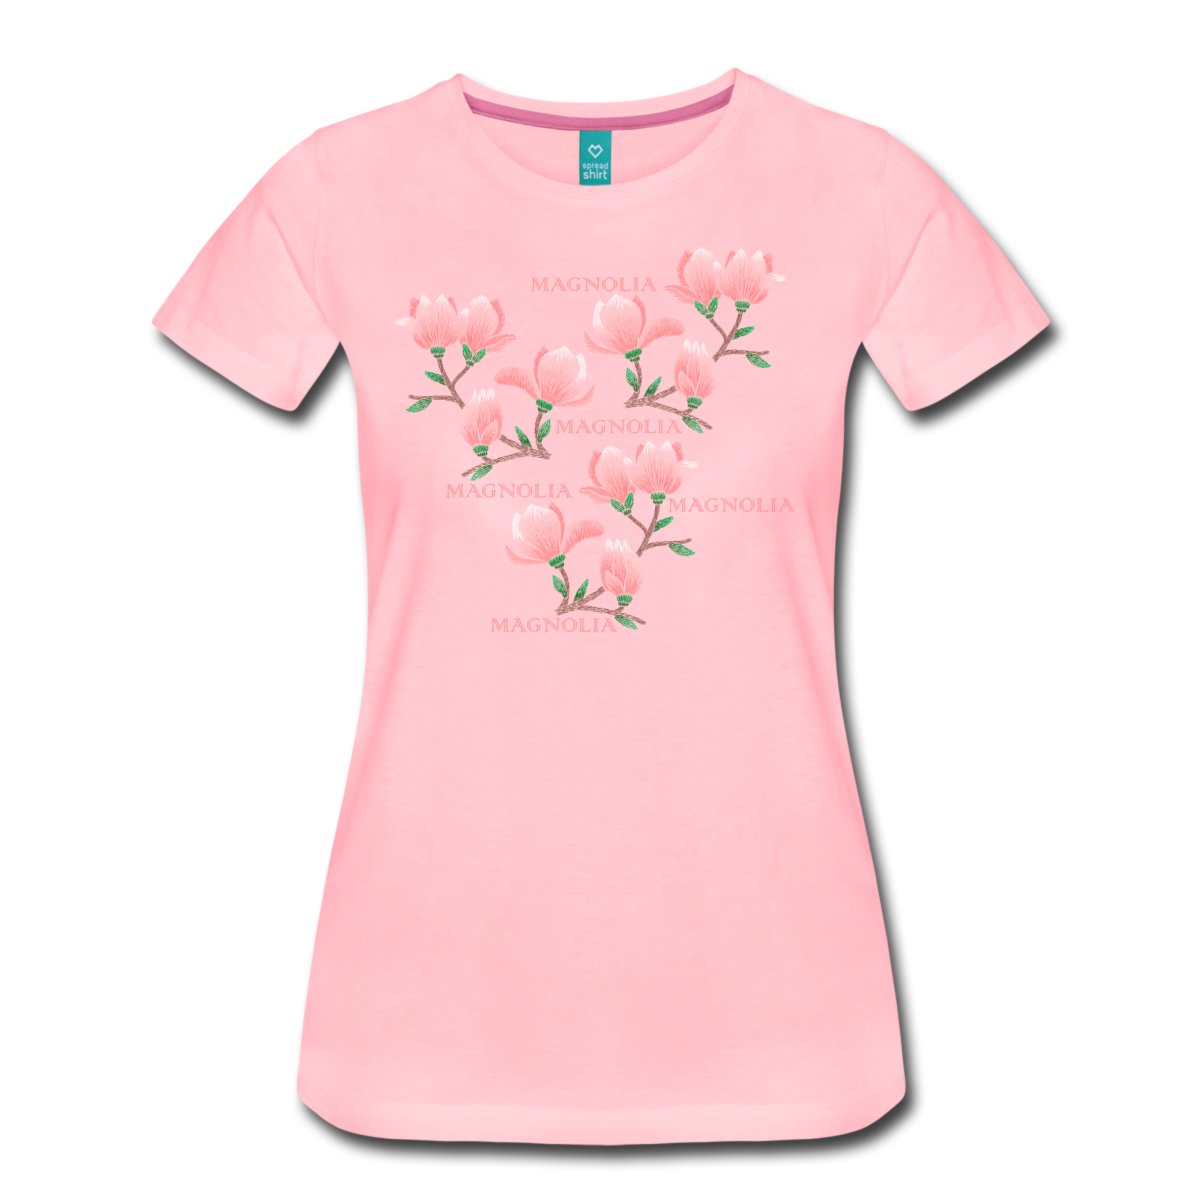 magnolia-premium-t-shirt-dam-rosa.jpg